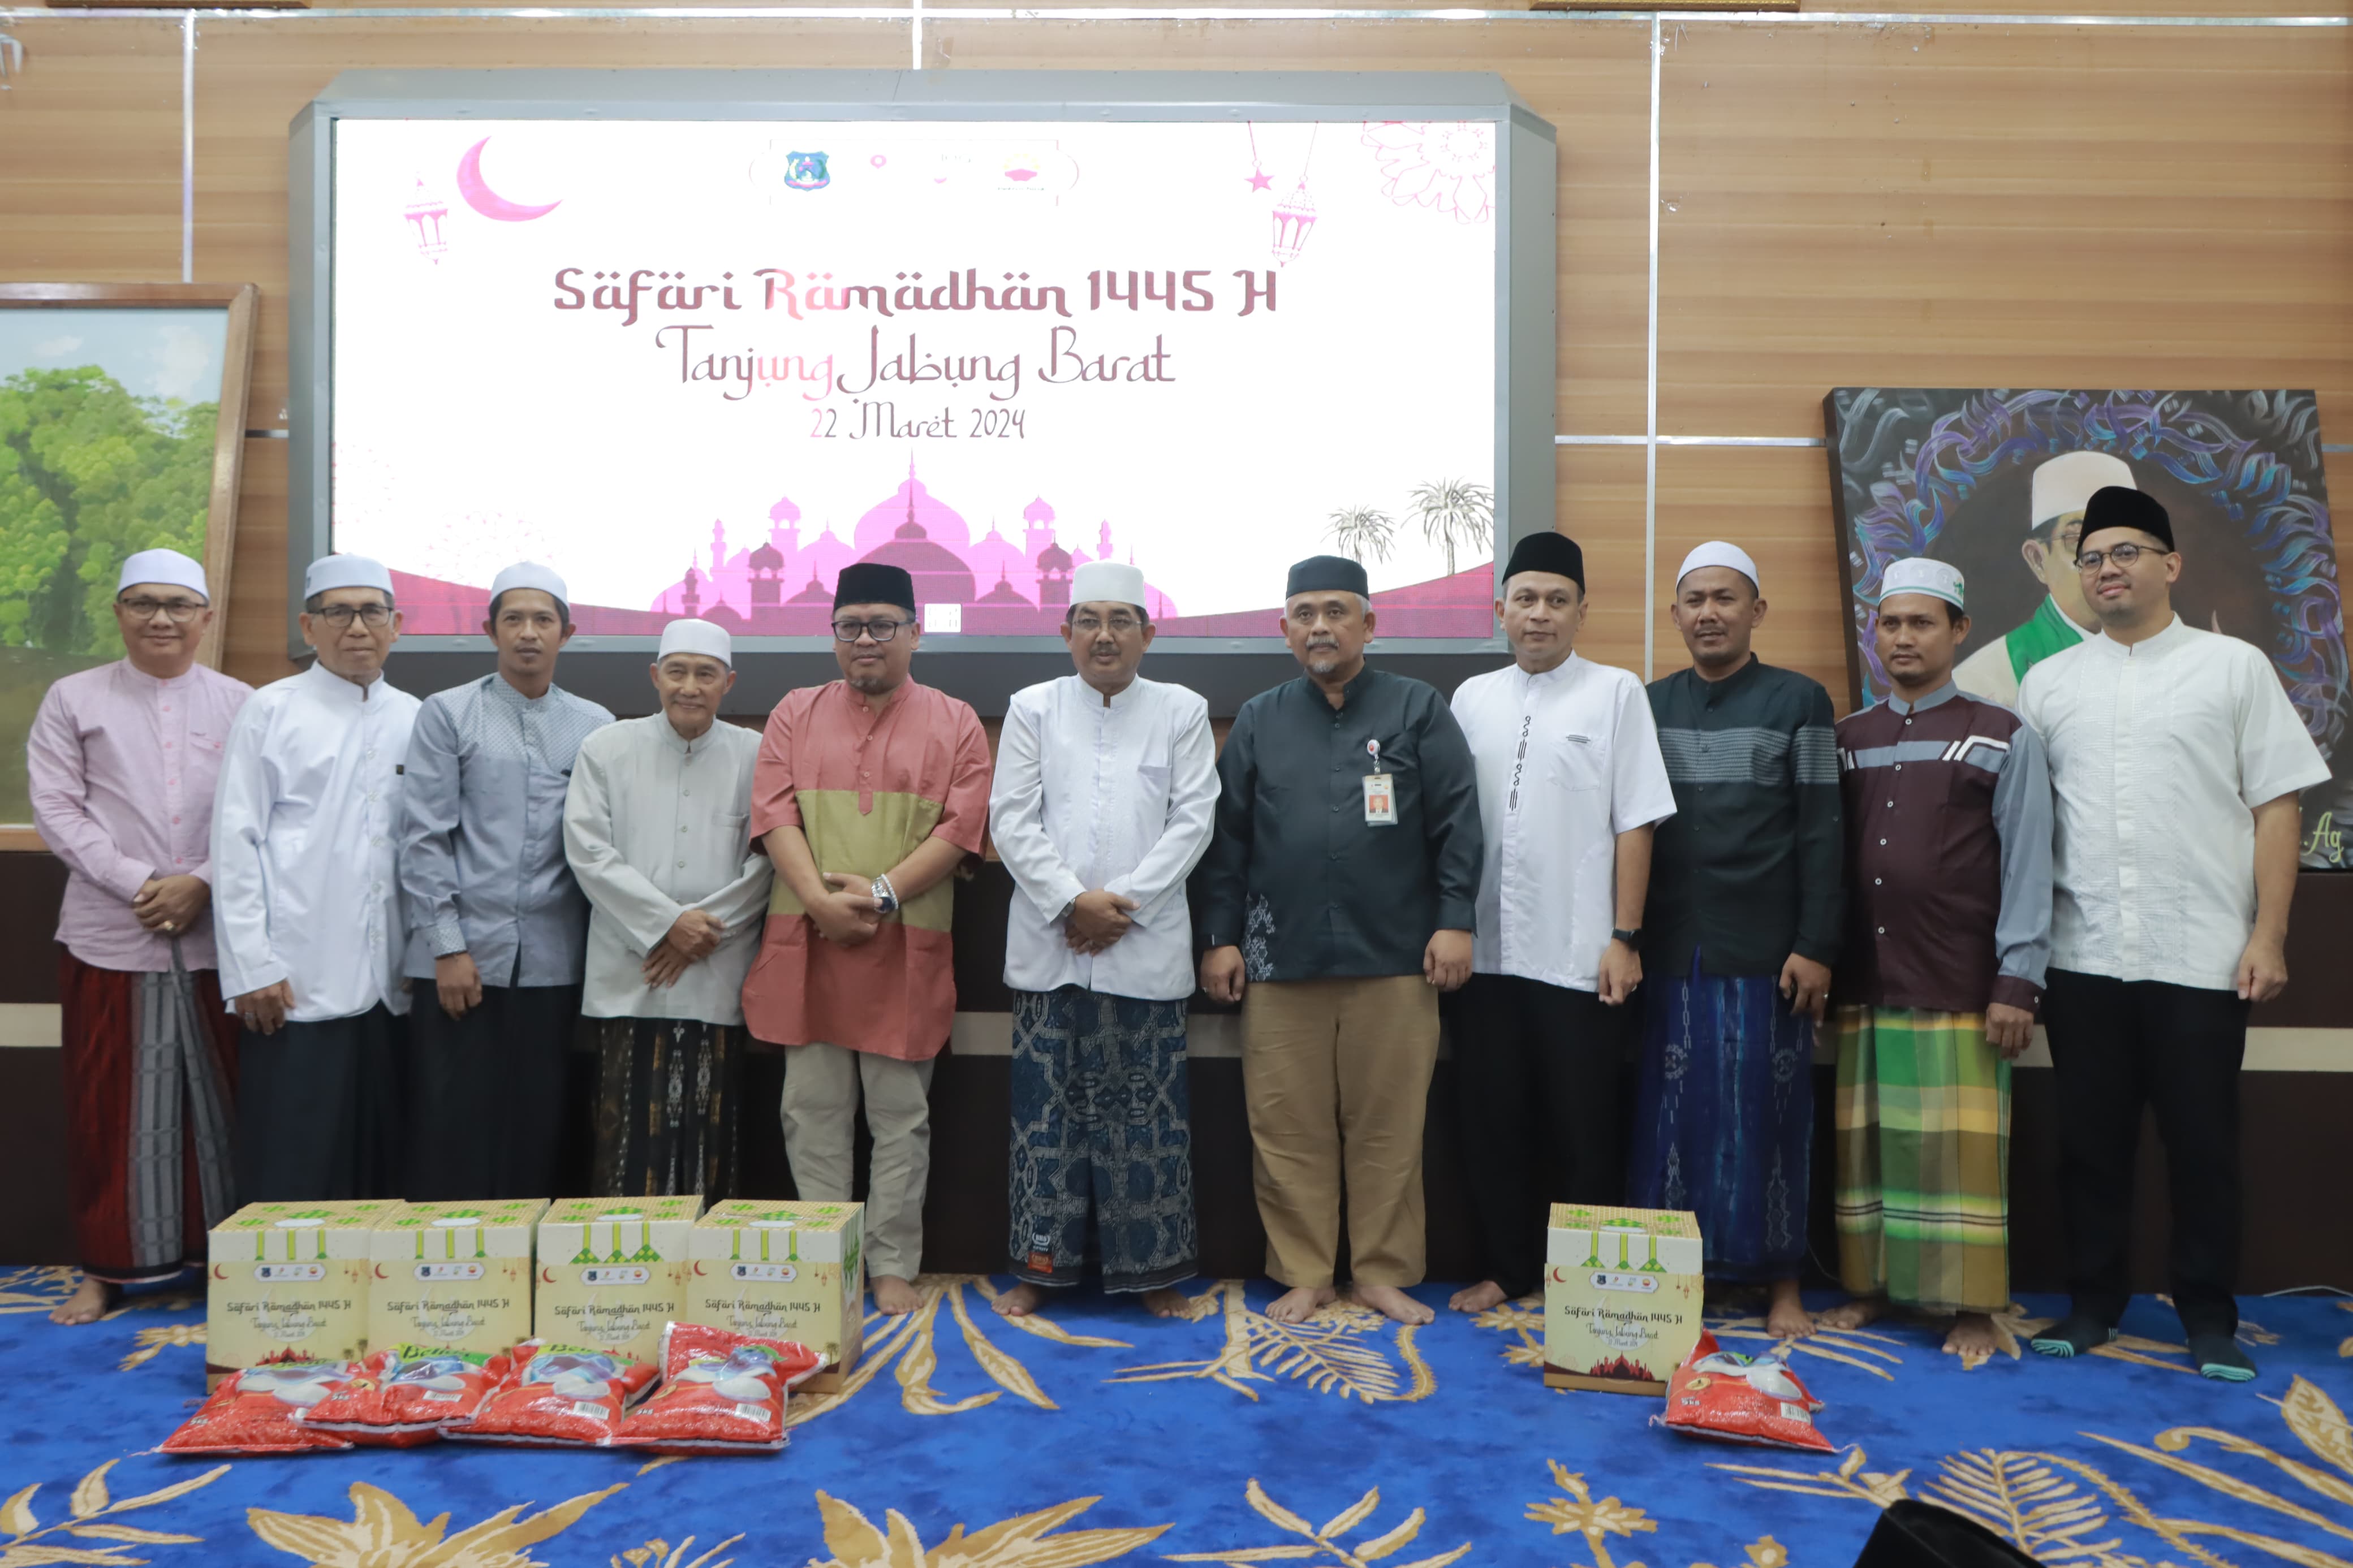 Safari Ramadhan 1445 H, SKK Migas PetroChina Salurkan Bantuan 150 Paket Bahan Pokok dan Santuni Anak Yatim